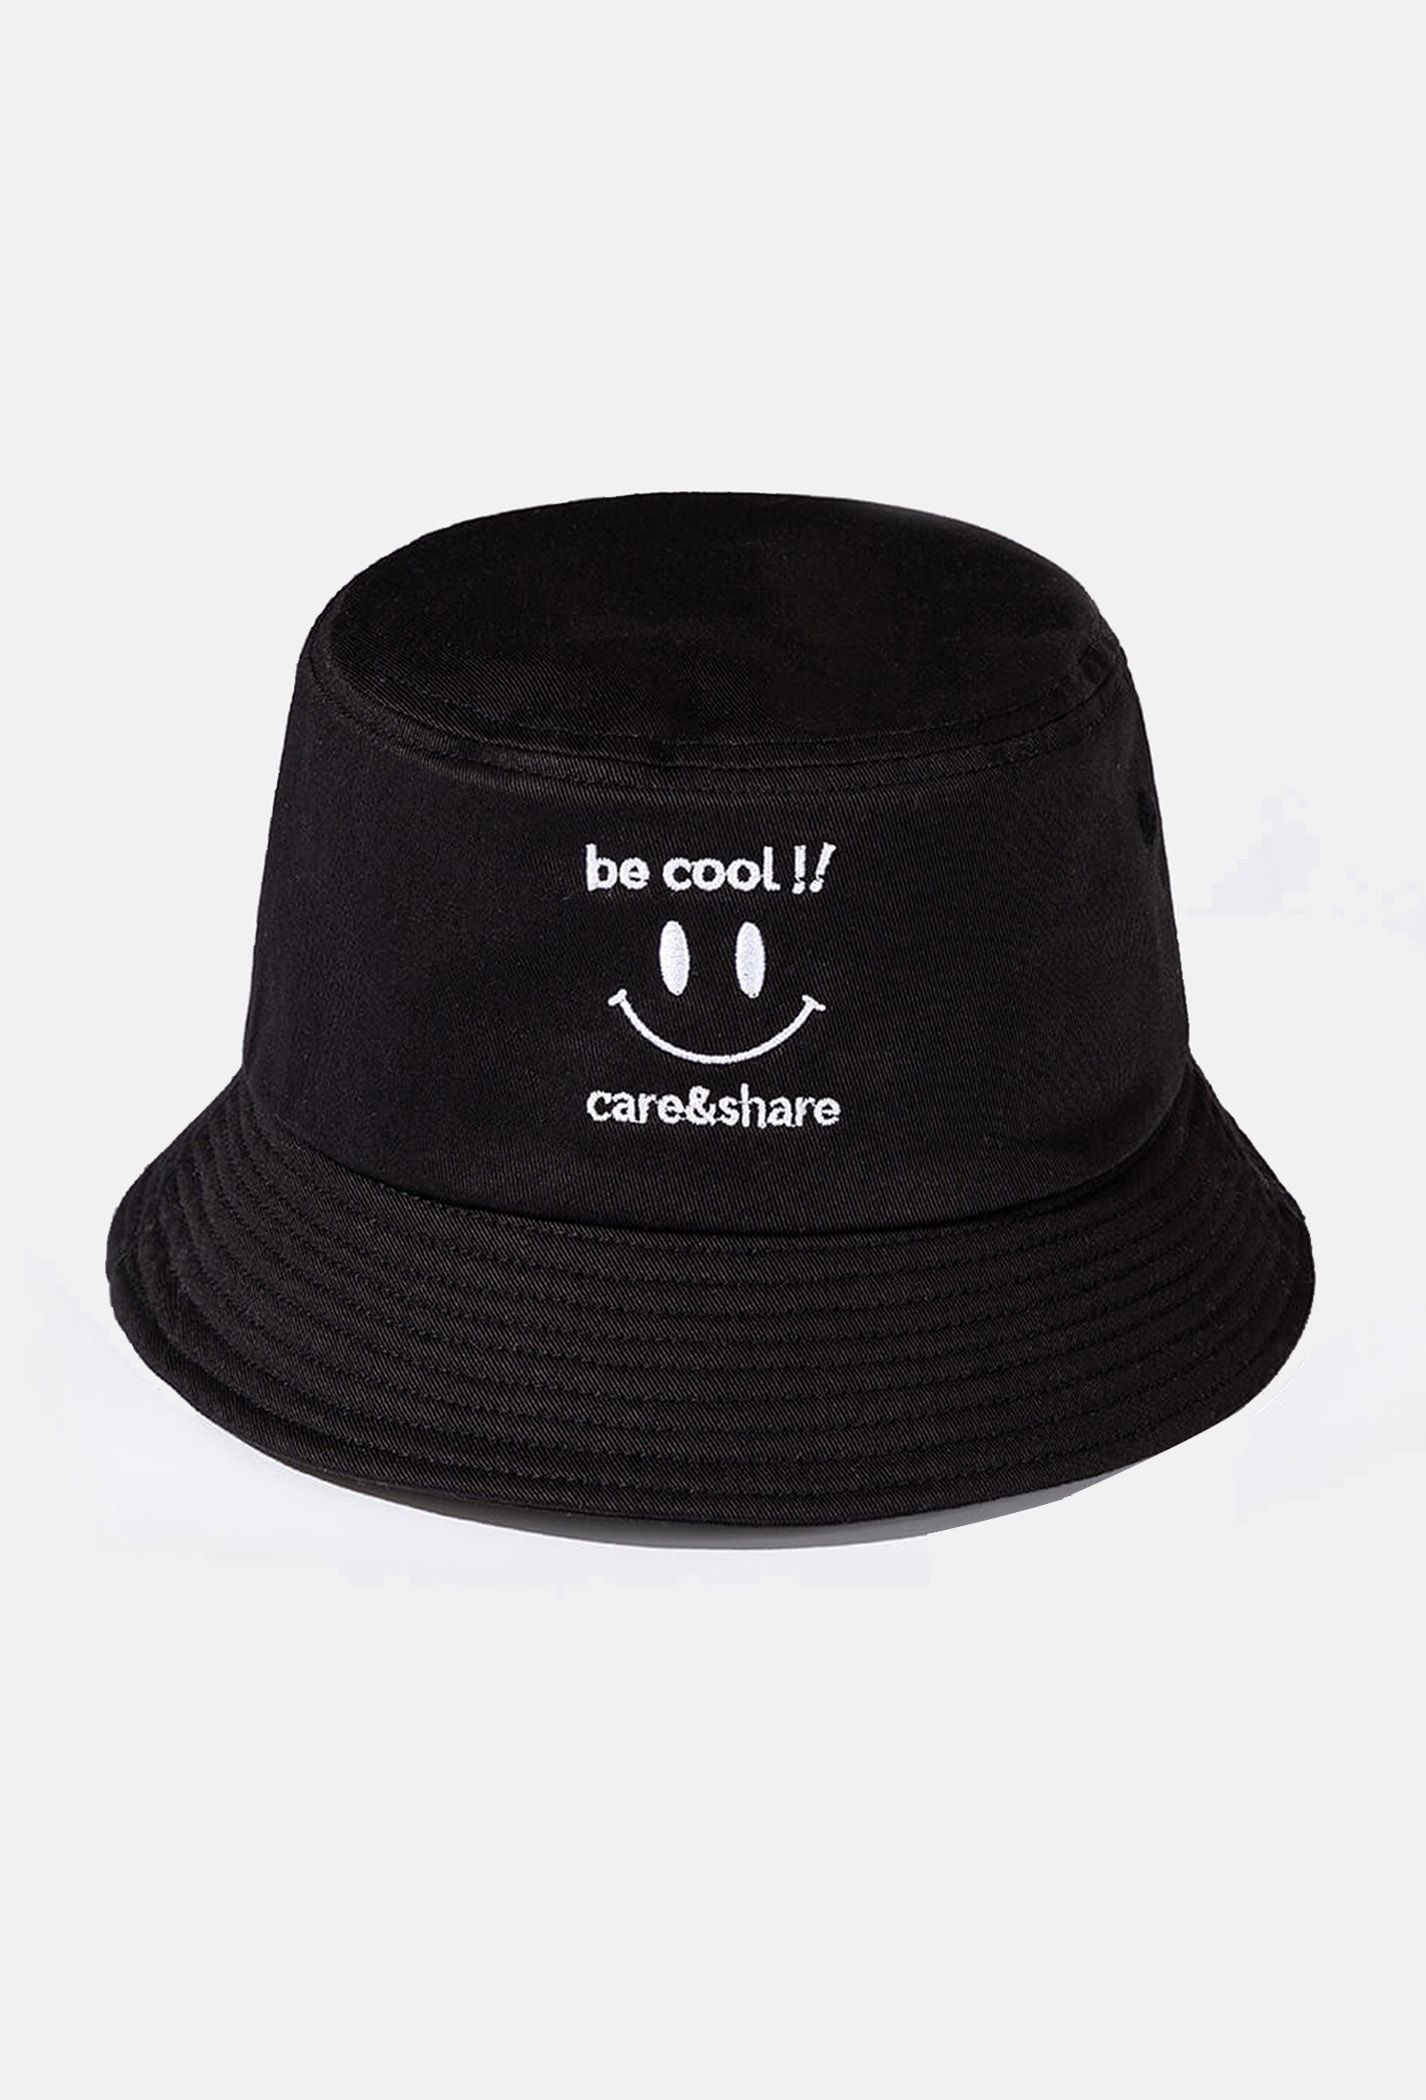 Mũ/Nón Bucket Hat thêu Be Cool!!  Đen